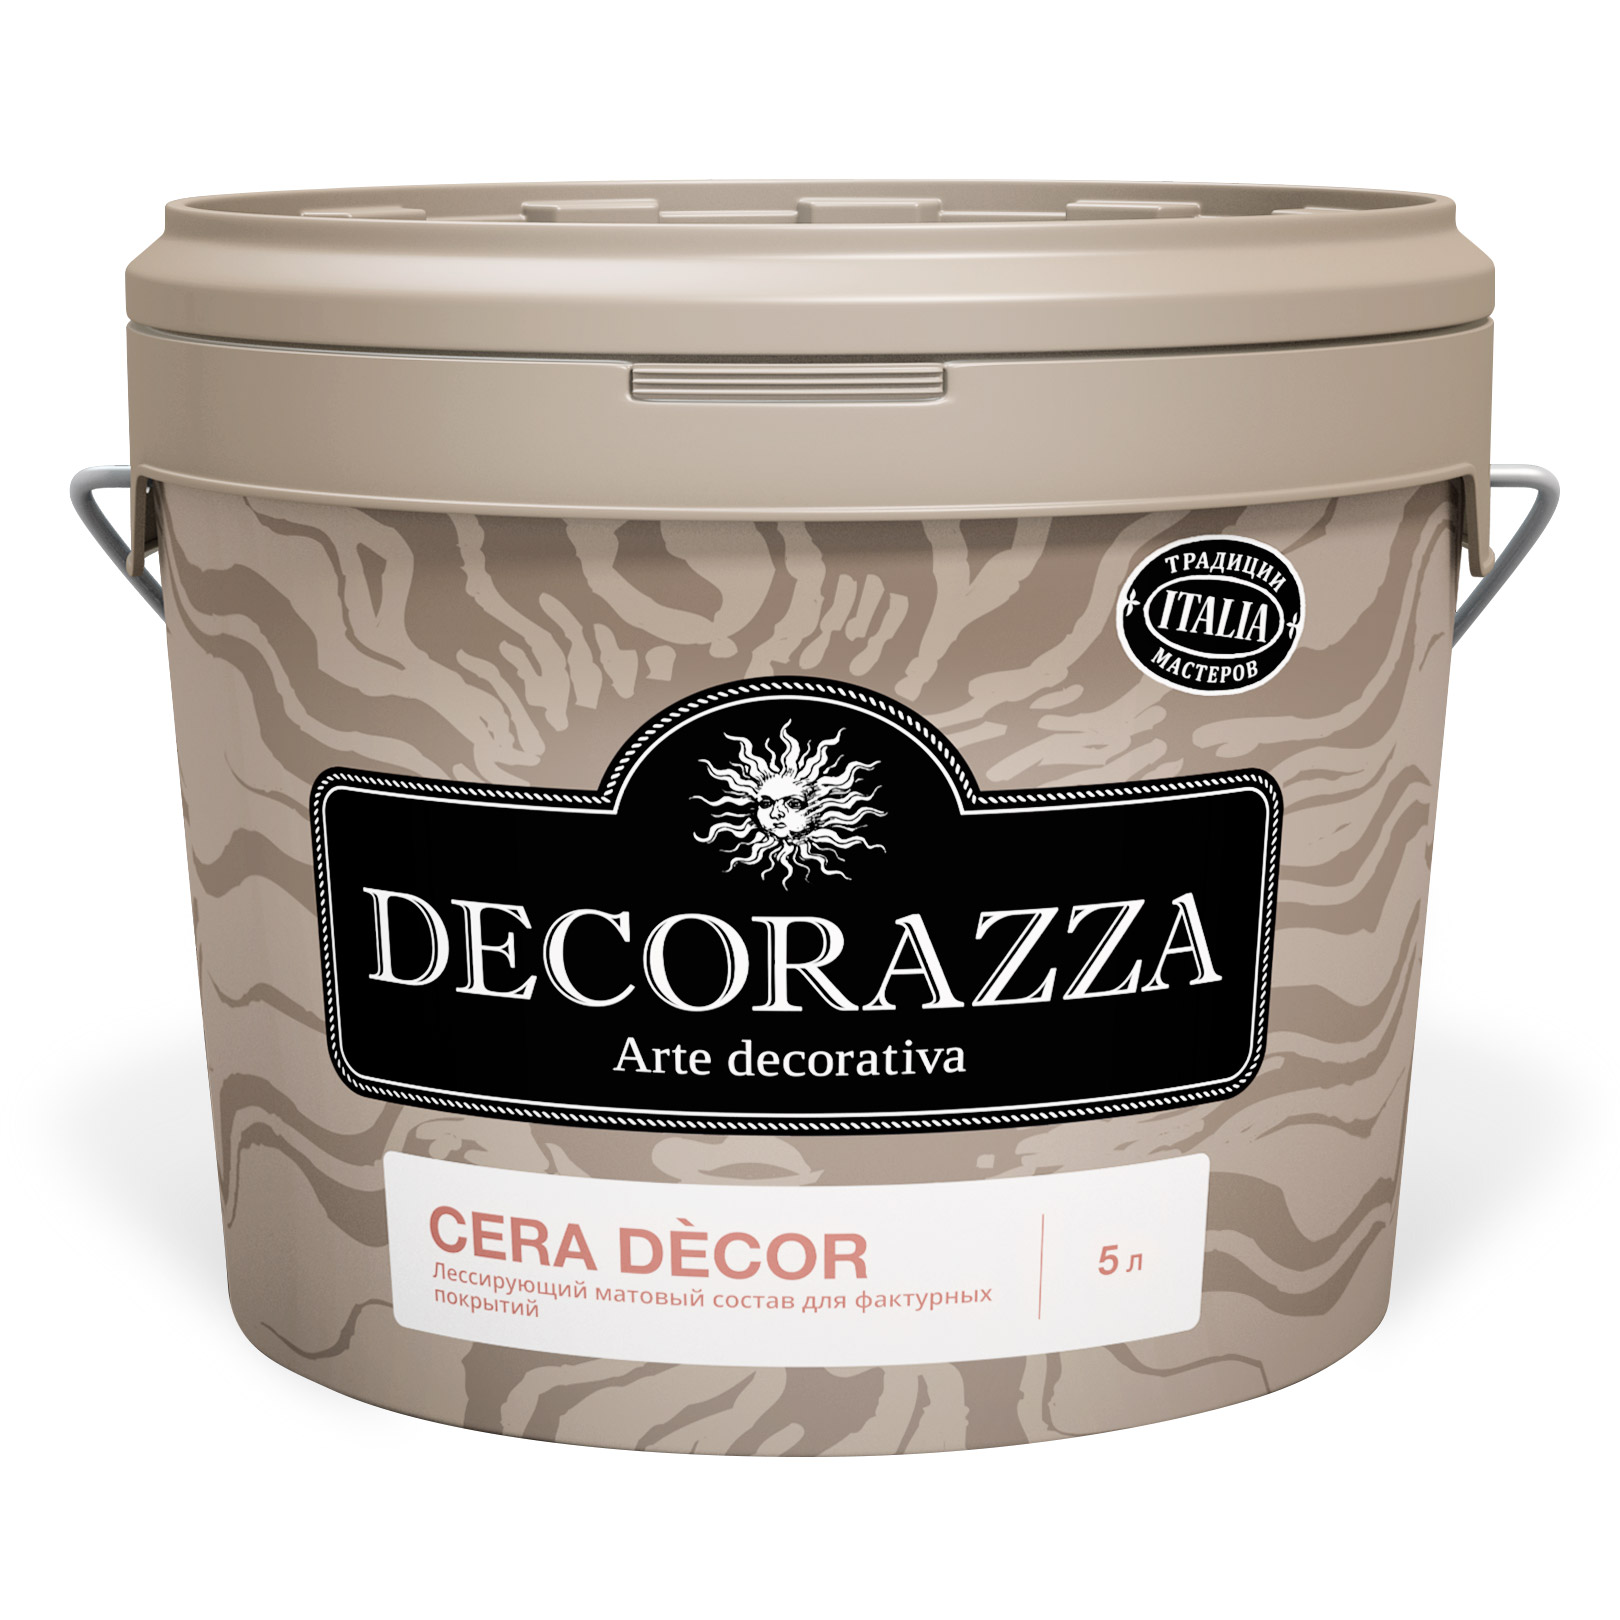 Где купить Воск Decorazza для штукатурок Cera Decor 1 кг (DCD-09) Decorazza 